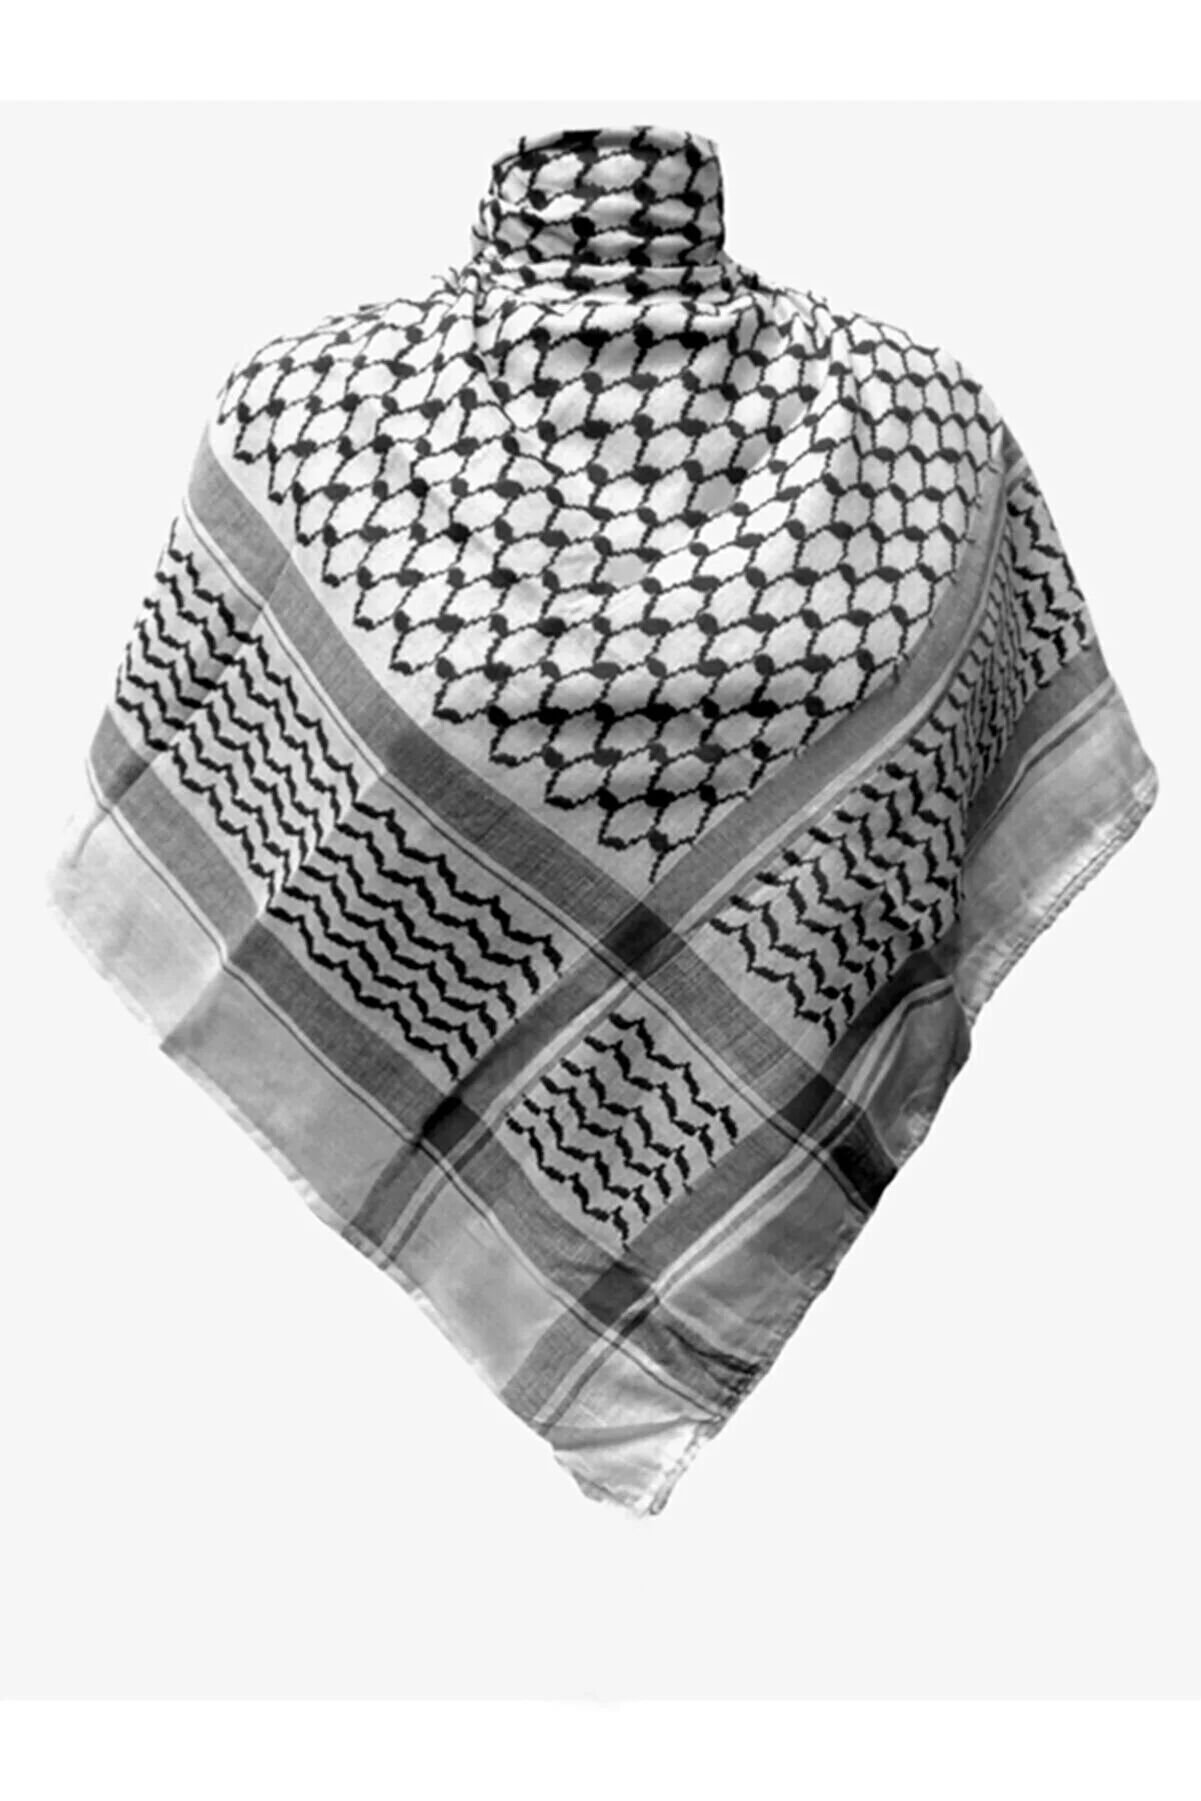 Filistin Puşisi Kefiyesi Kaliteli Bıyıklı Model Puşi Arafat